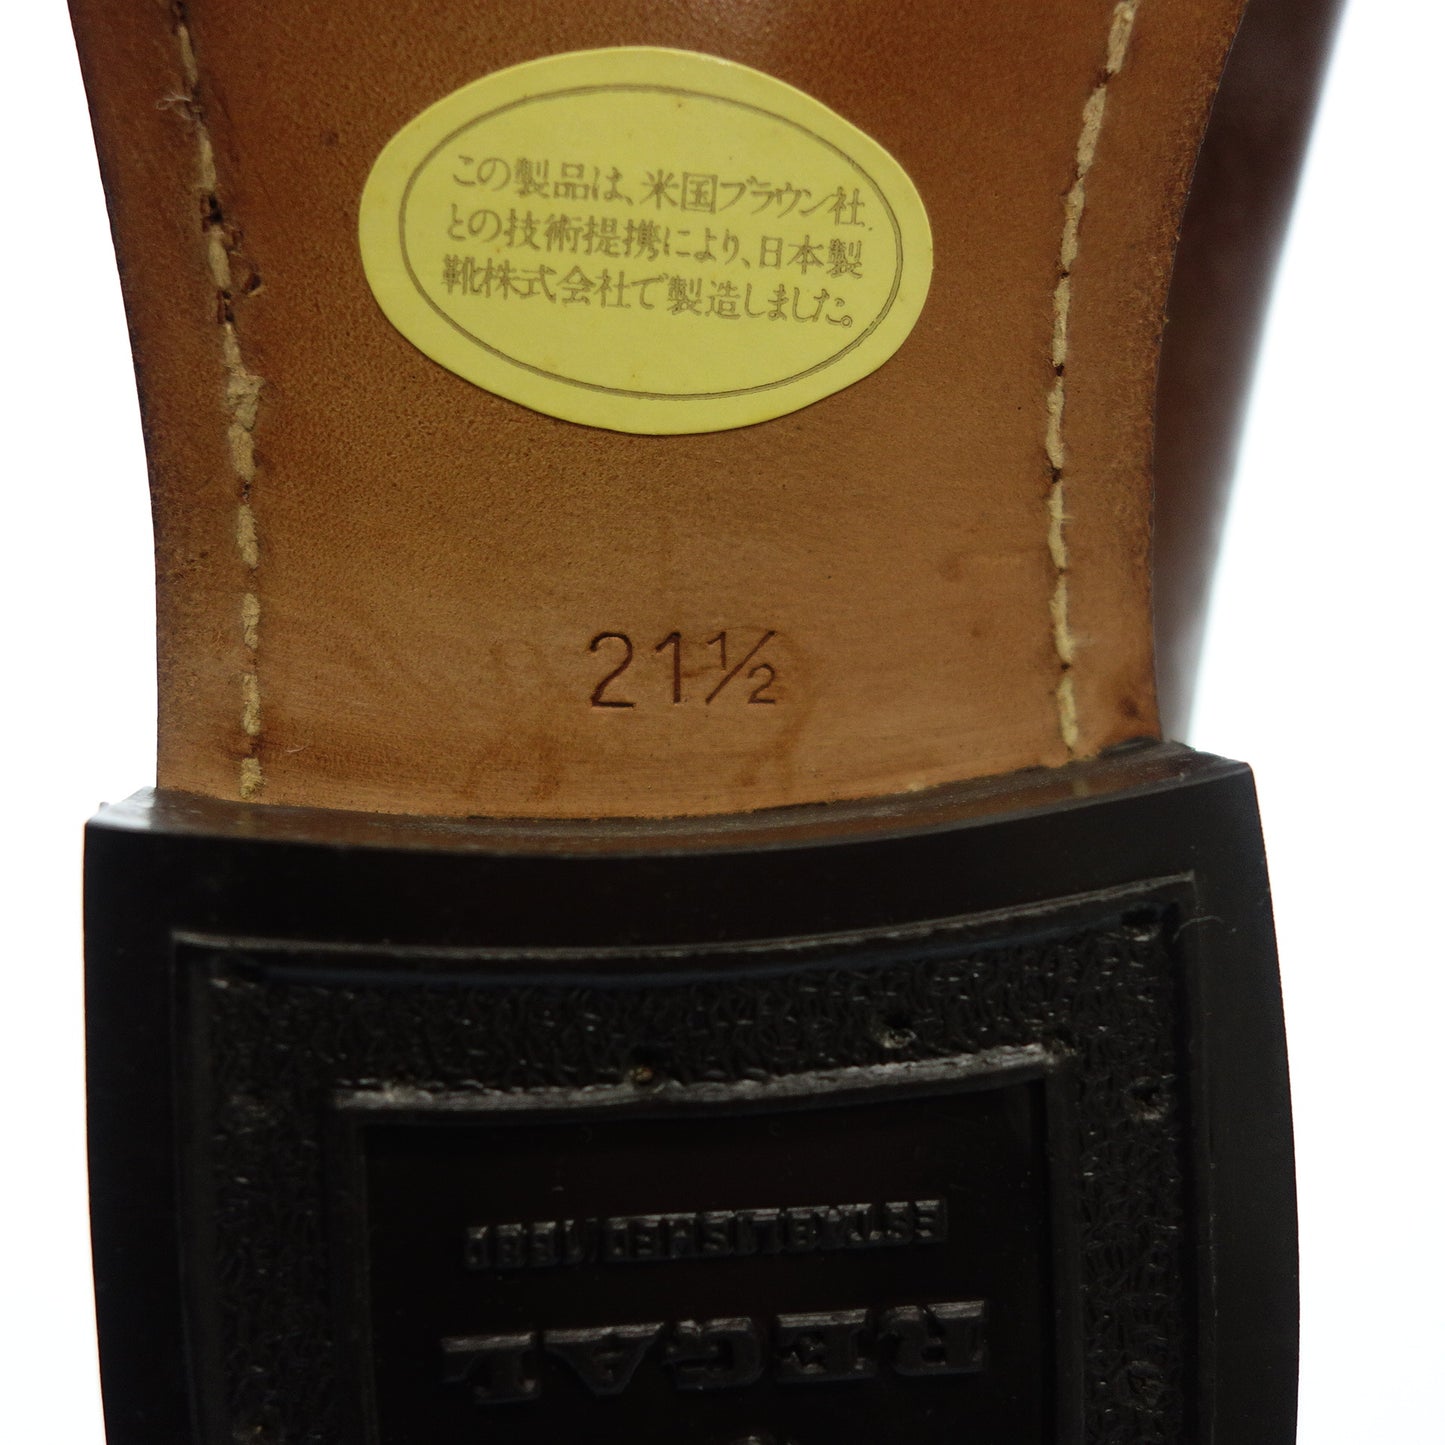 Regal Leather Loafer Tassel Ladies 21.5 Brown REGAL [AFC20] [Used] 